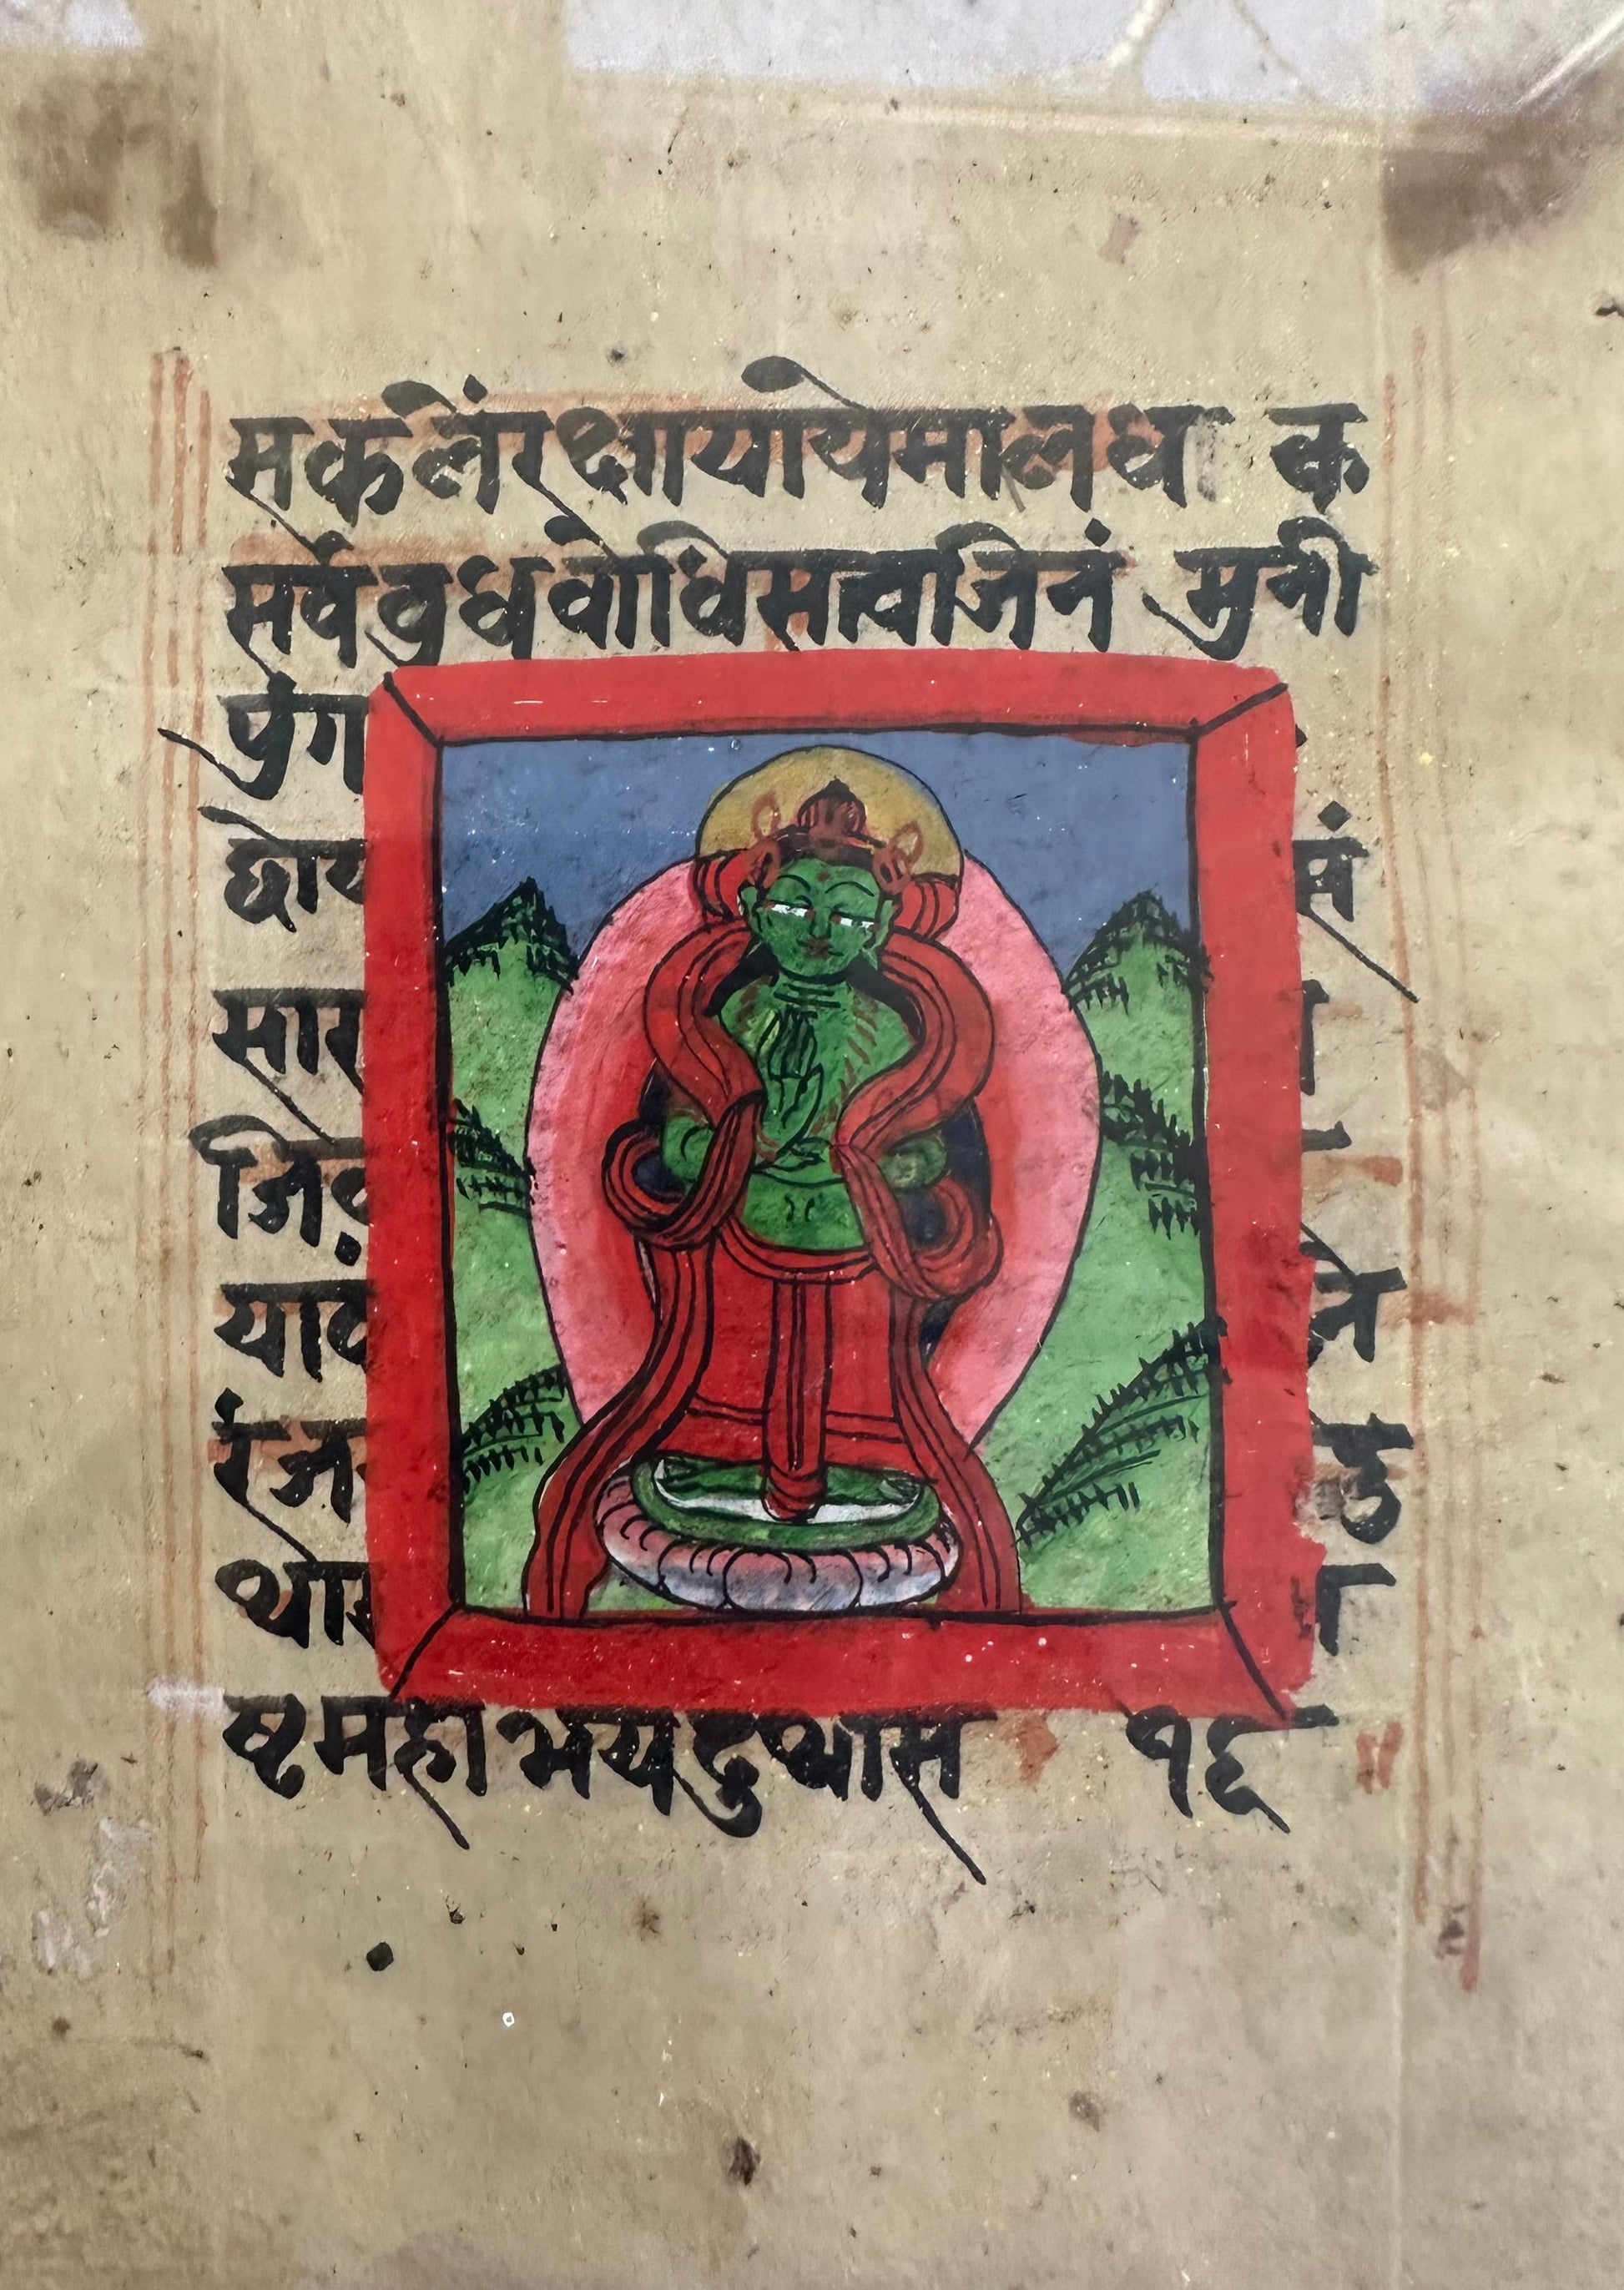 Early Buddhist Manuscript Paintings Series - 5 - DharBazaar